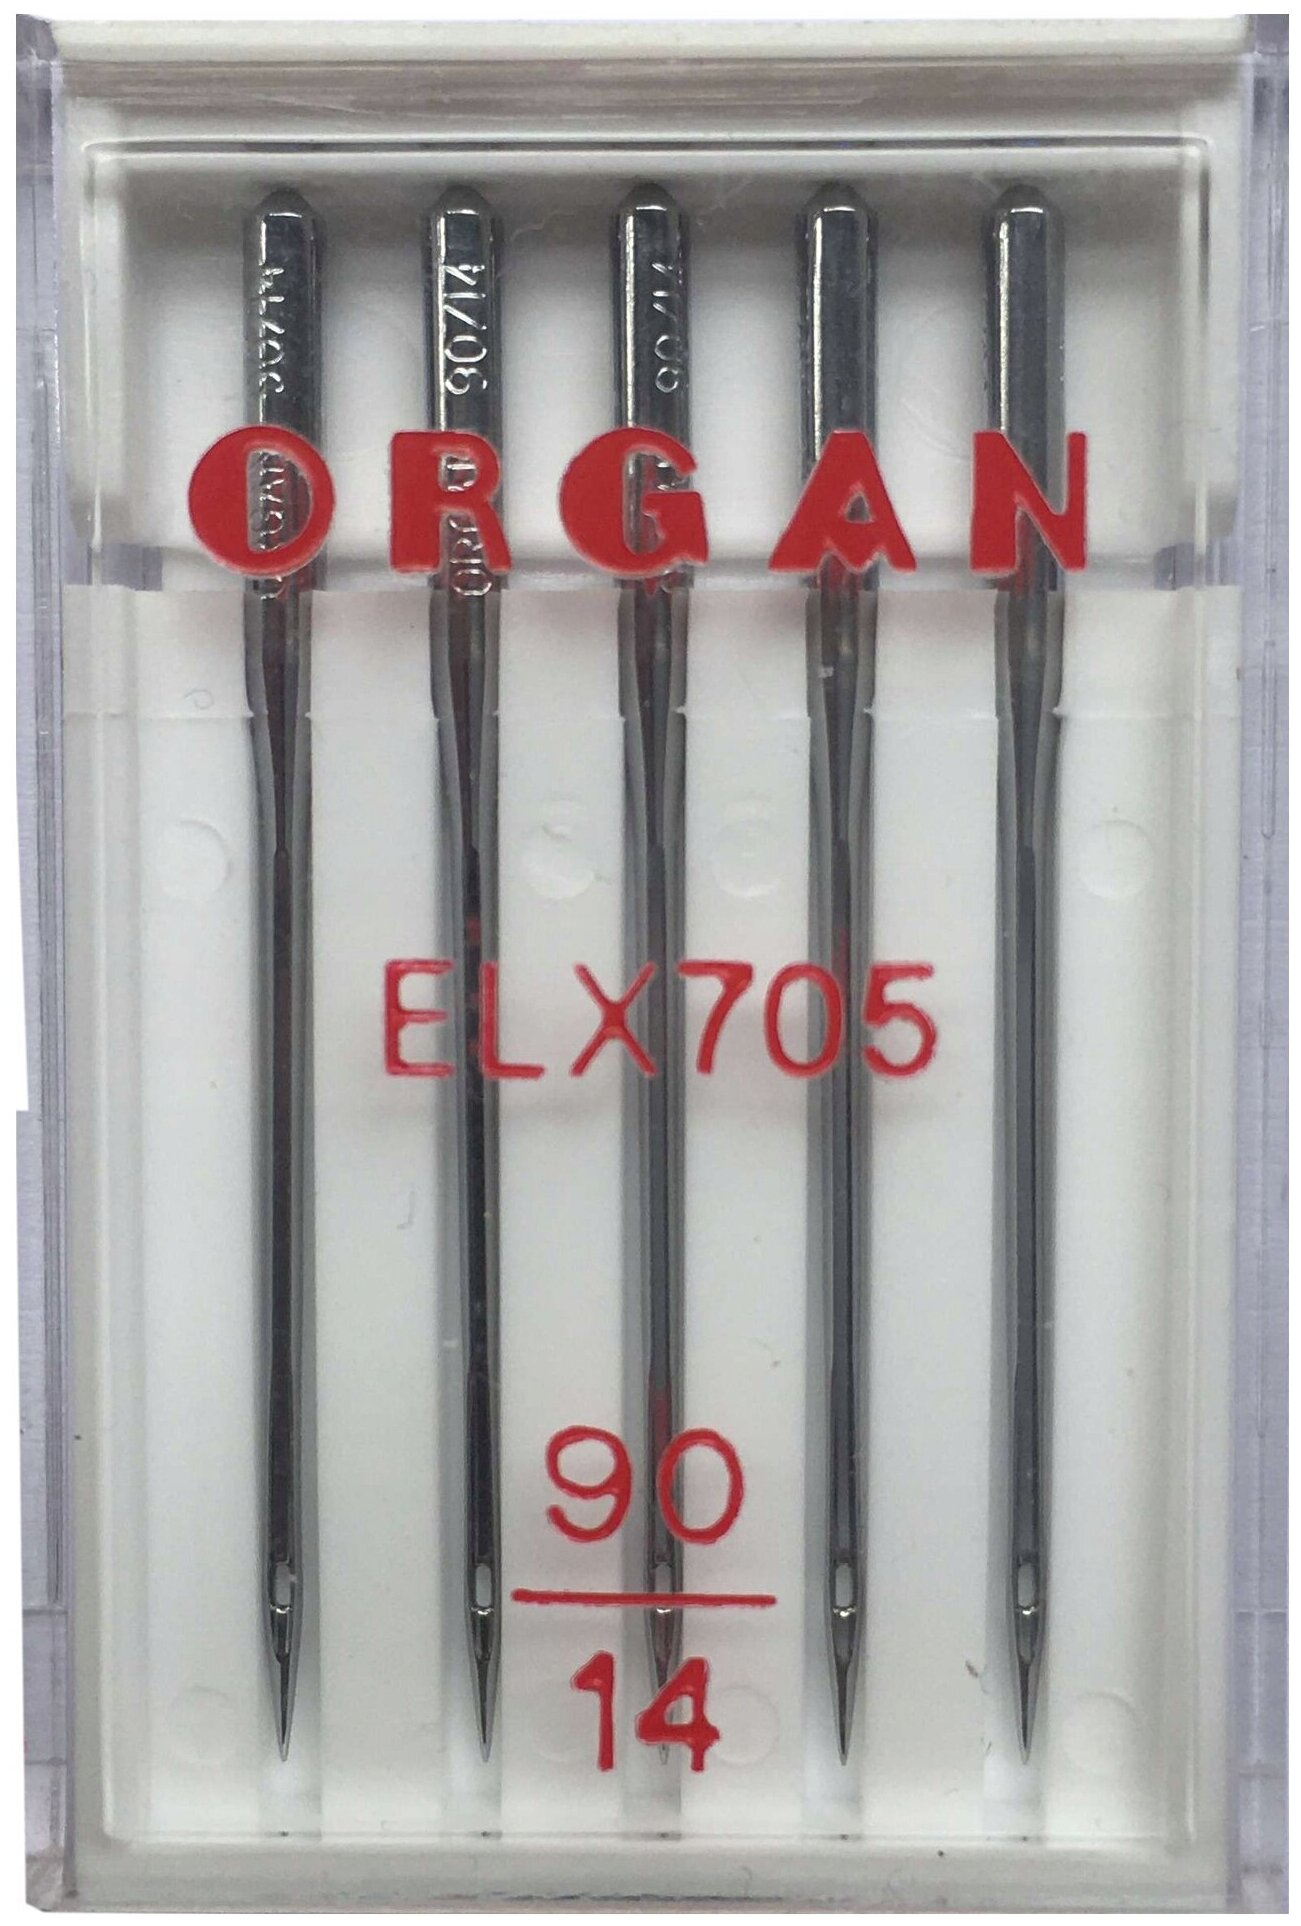 Иглы Organ ELx705 №90/14 (для распошивальных машин) 5 шт